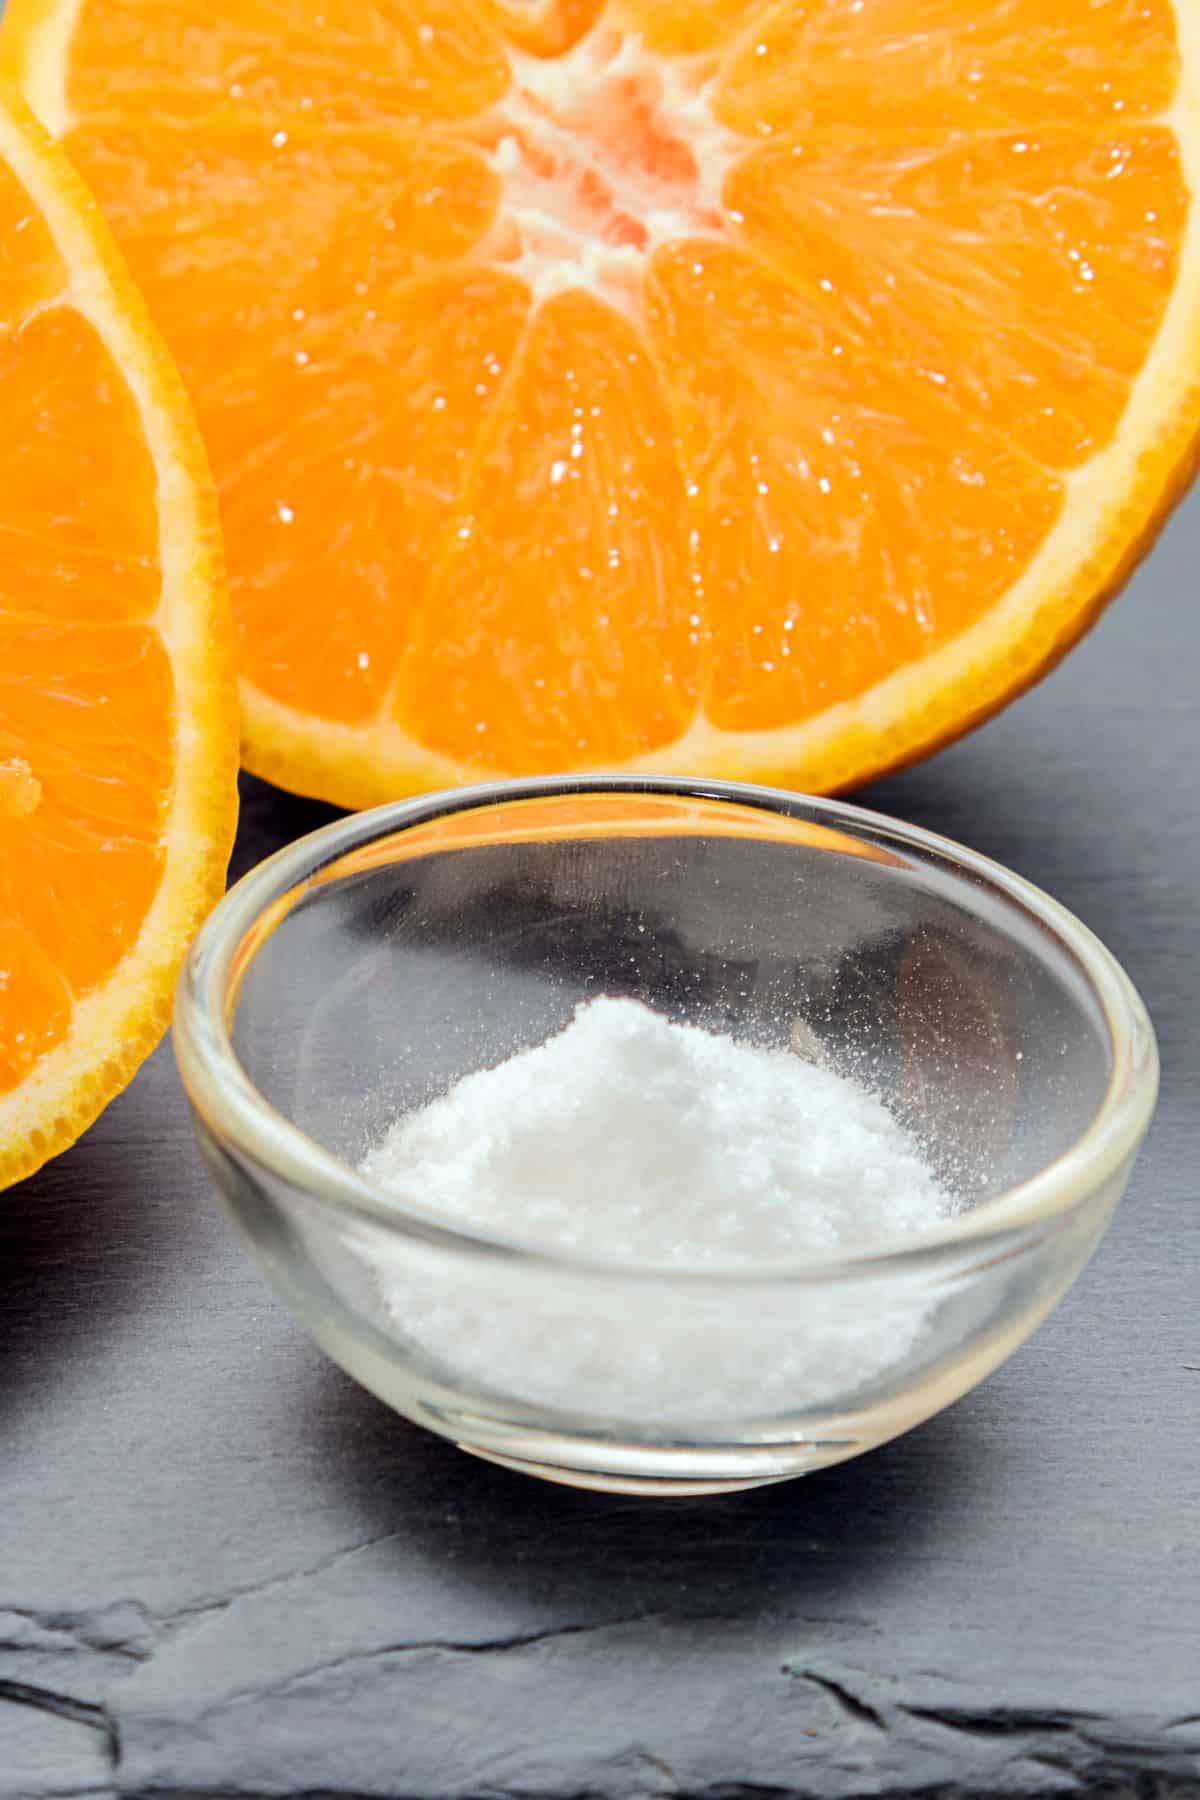 a bowl of ascorbic acid next to a sliced orange.